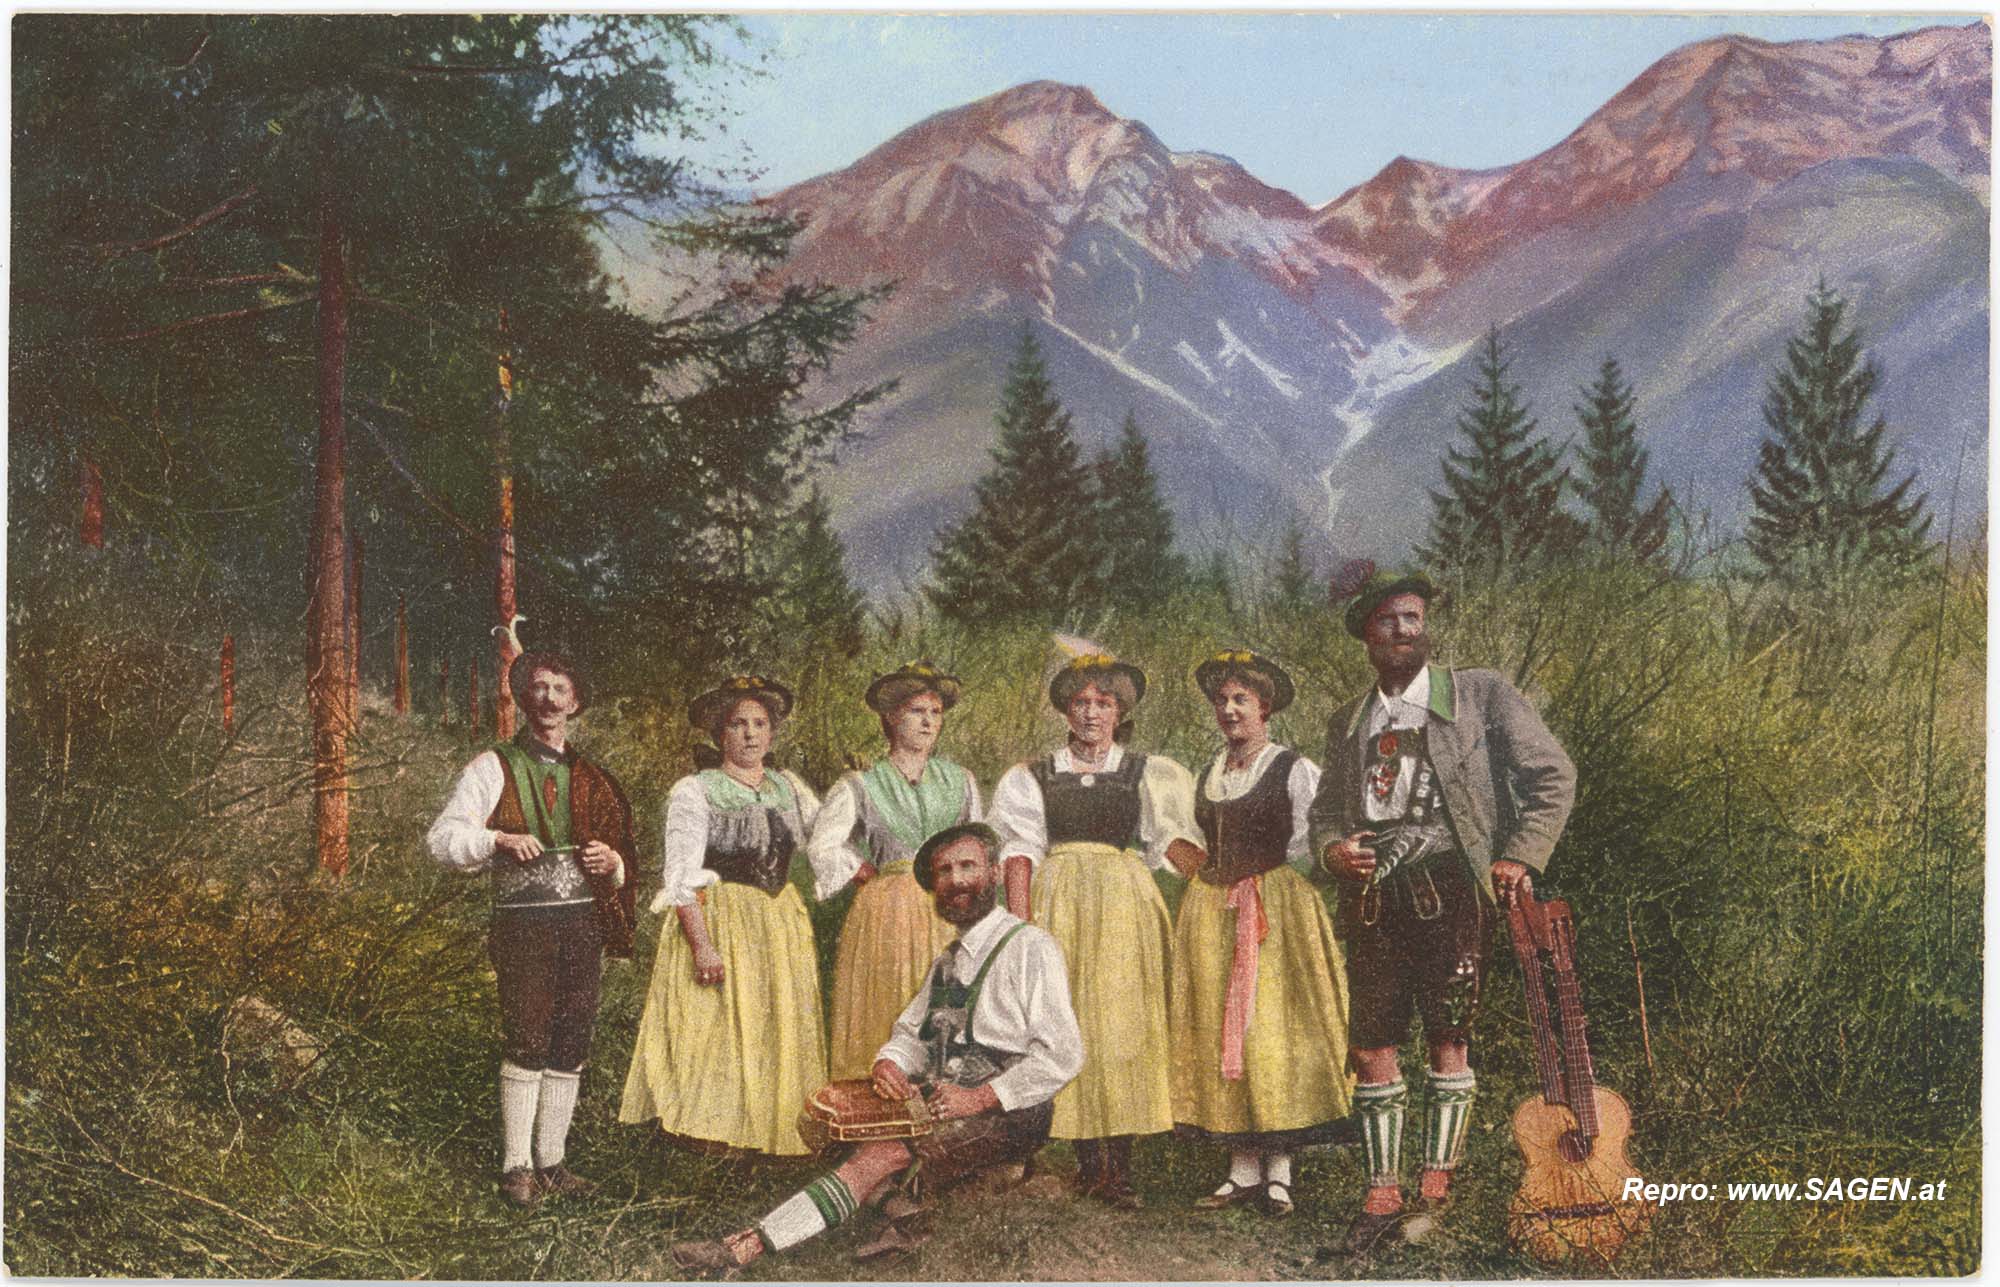 Original-Tiroler-Konzertsänger- und Schuhplattltänzer-Gesellschaft Lex Höpperger aus Rum bei Innsbruck